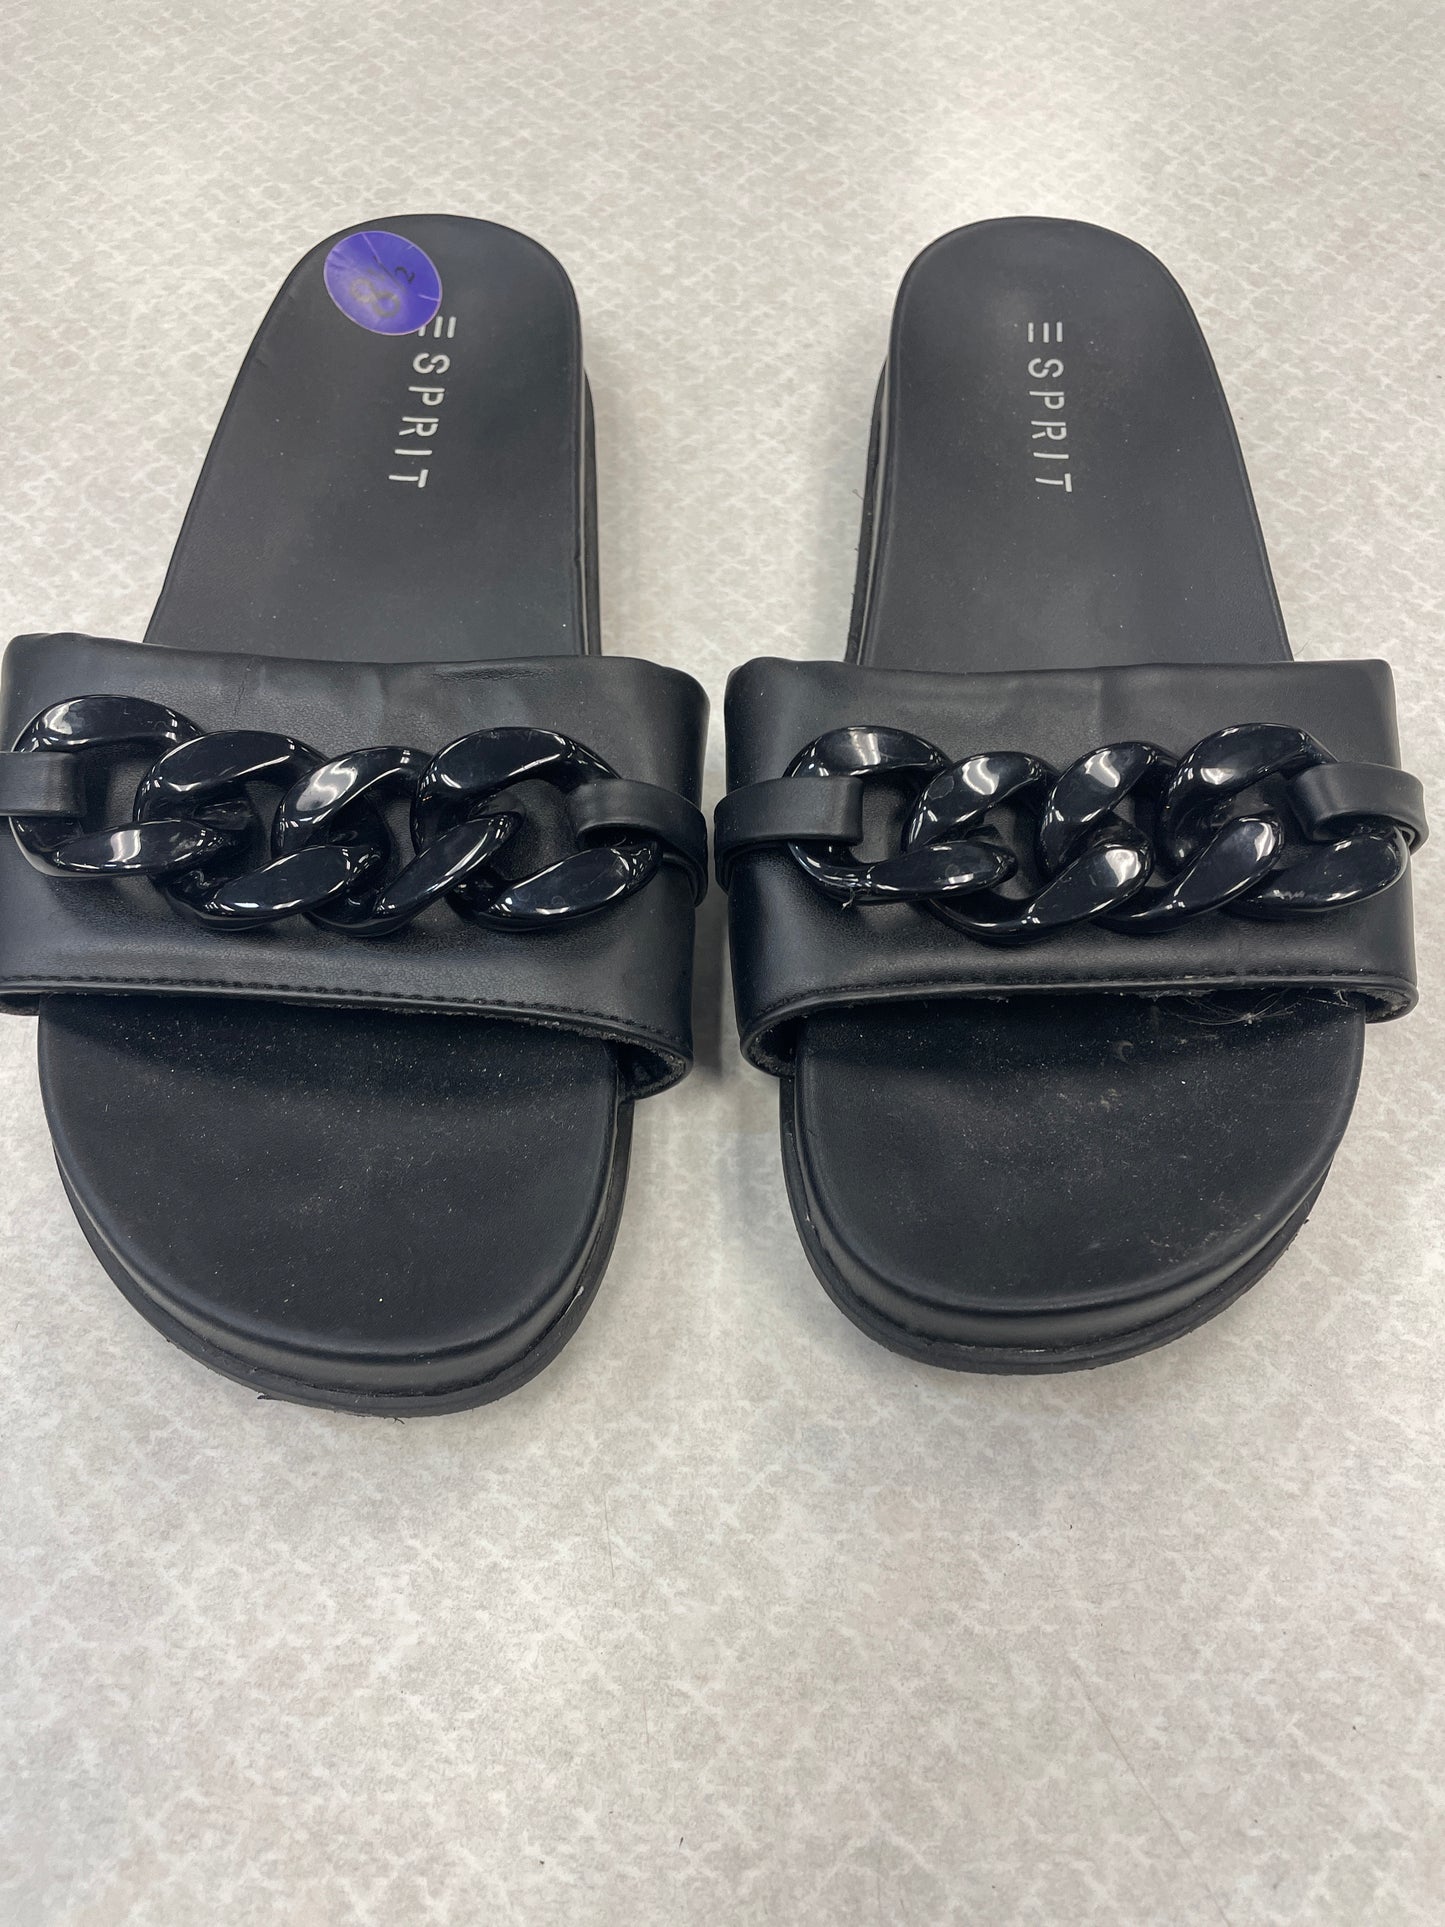 Sandals Flip Flops By Esprit  Size: 8.5